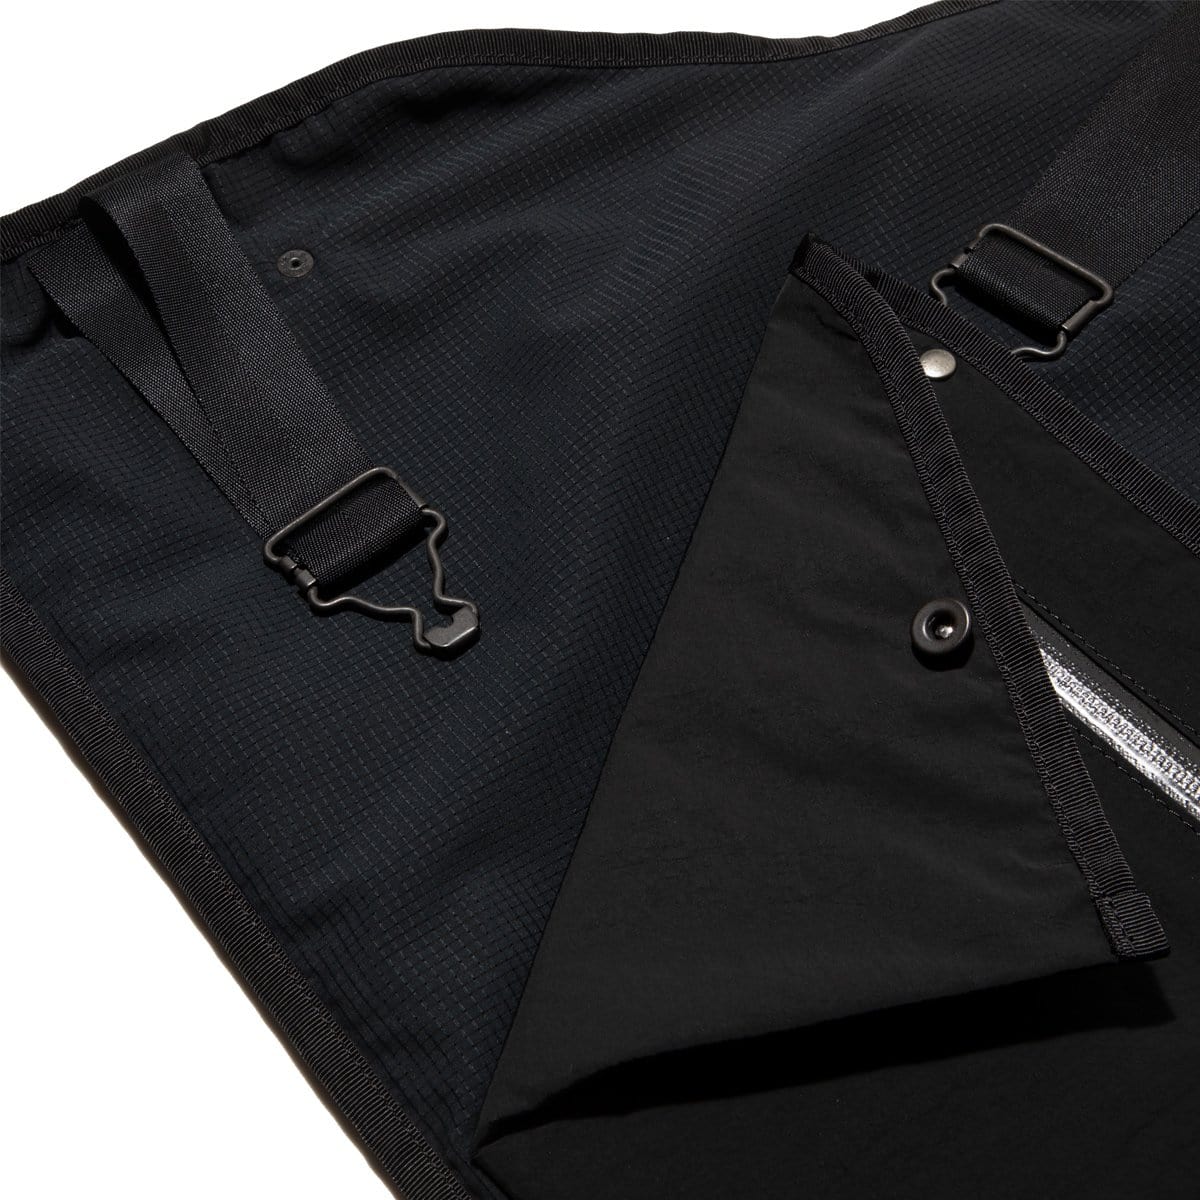 Nylon Fishing Vest Black – IetpShops Store